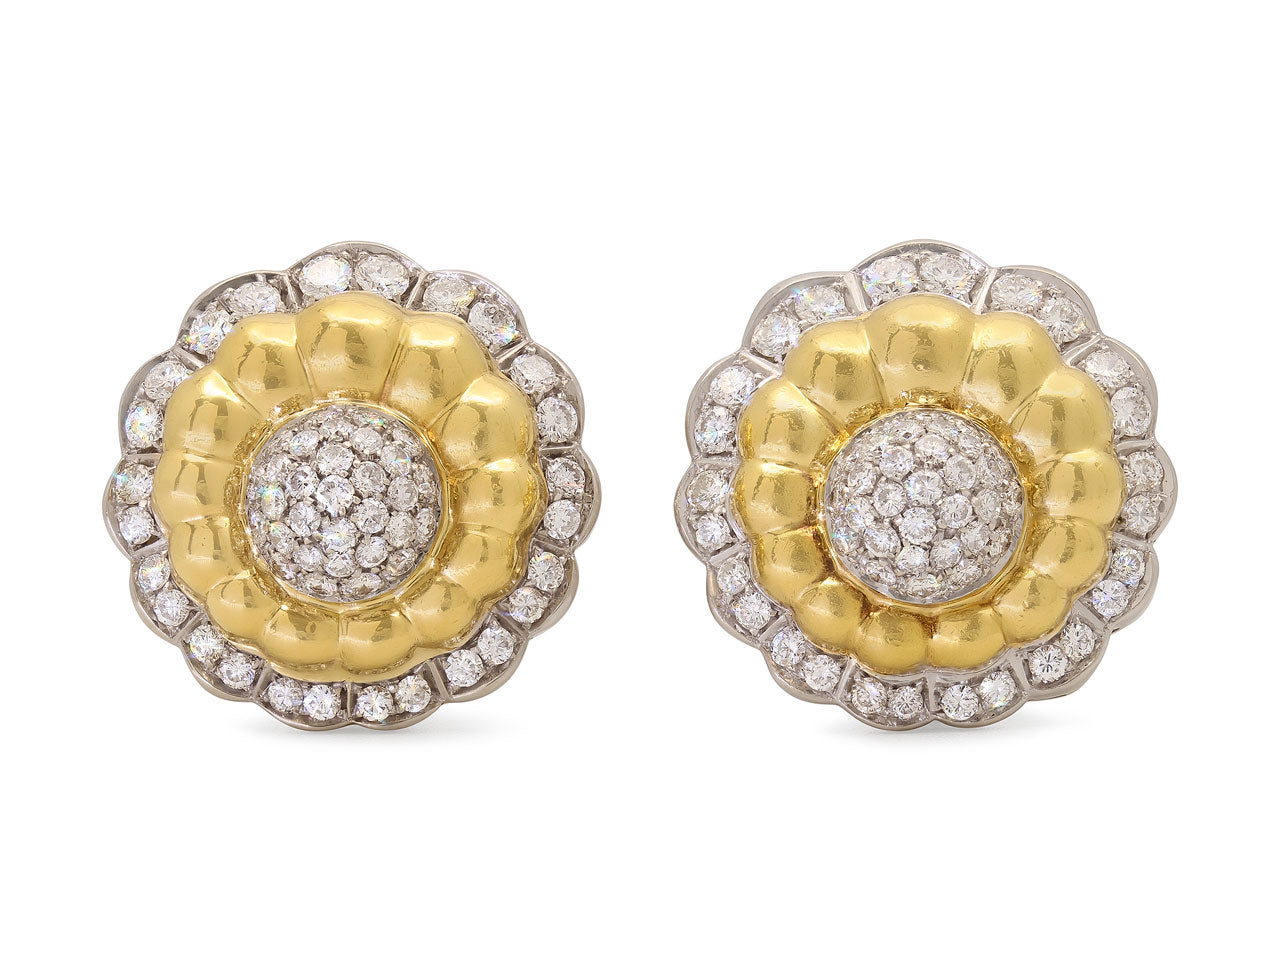 Floral Diamond Earrings in 18K Gold